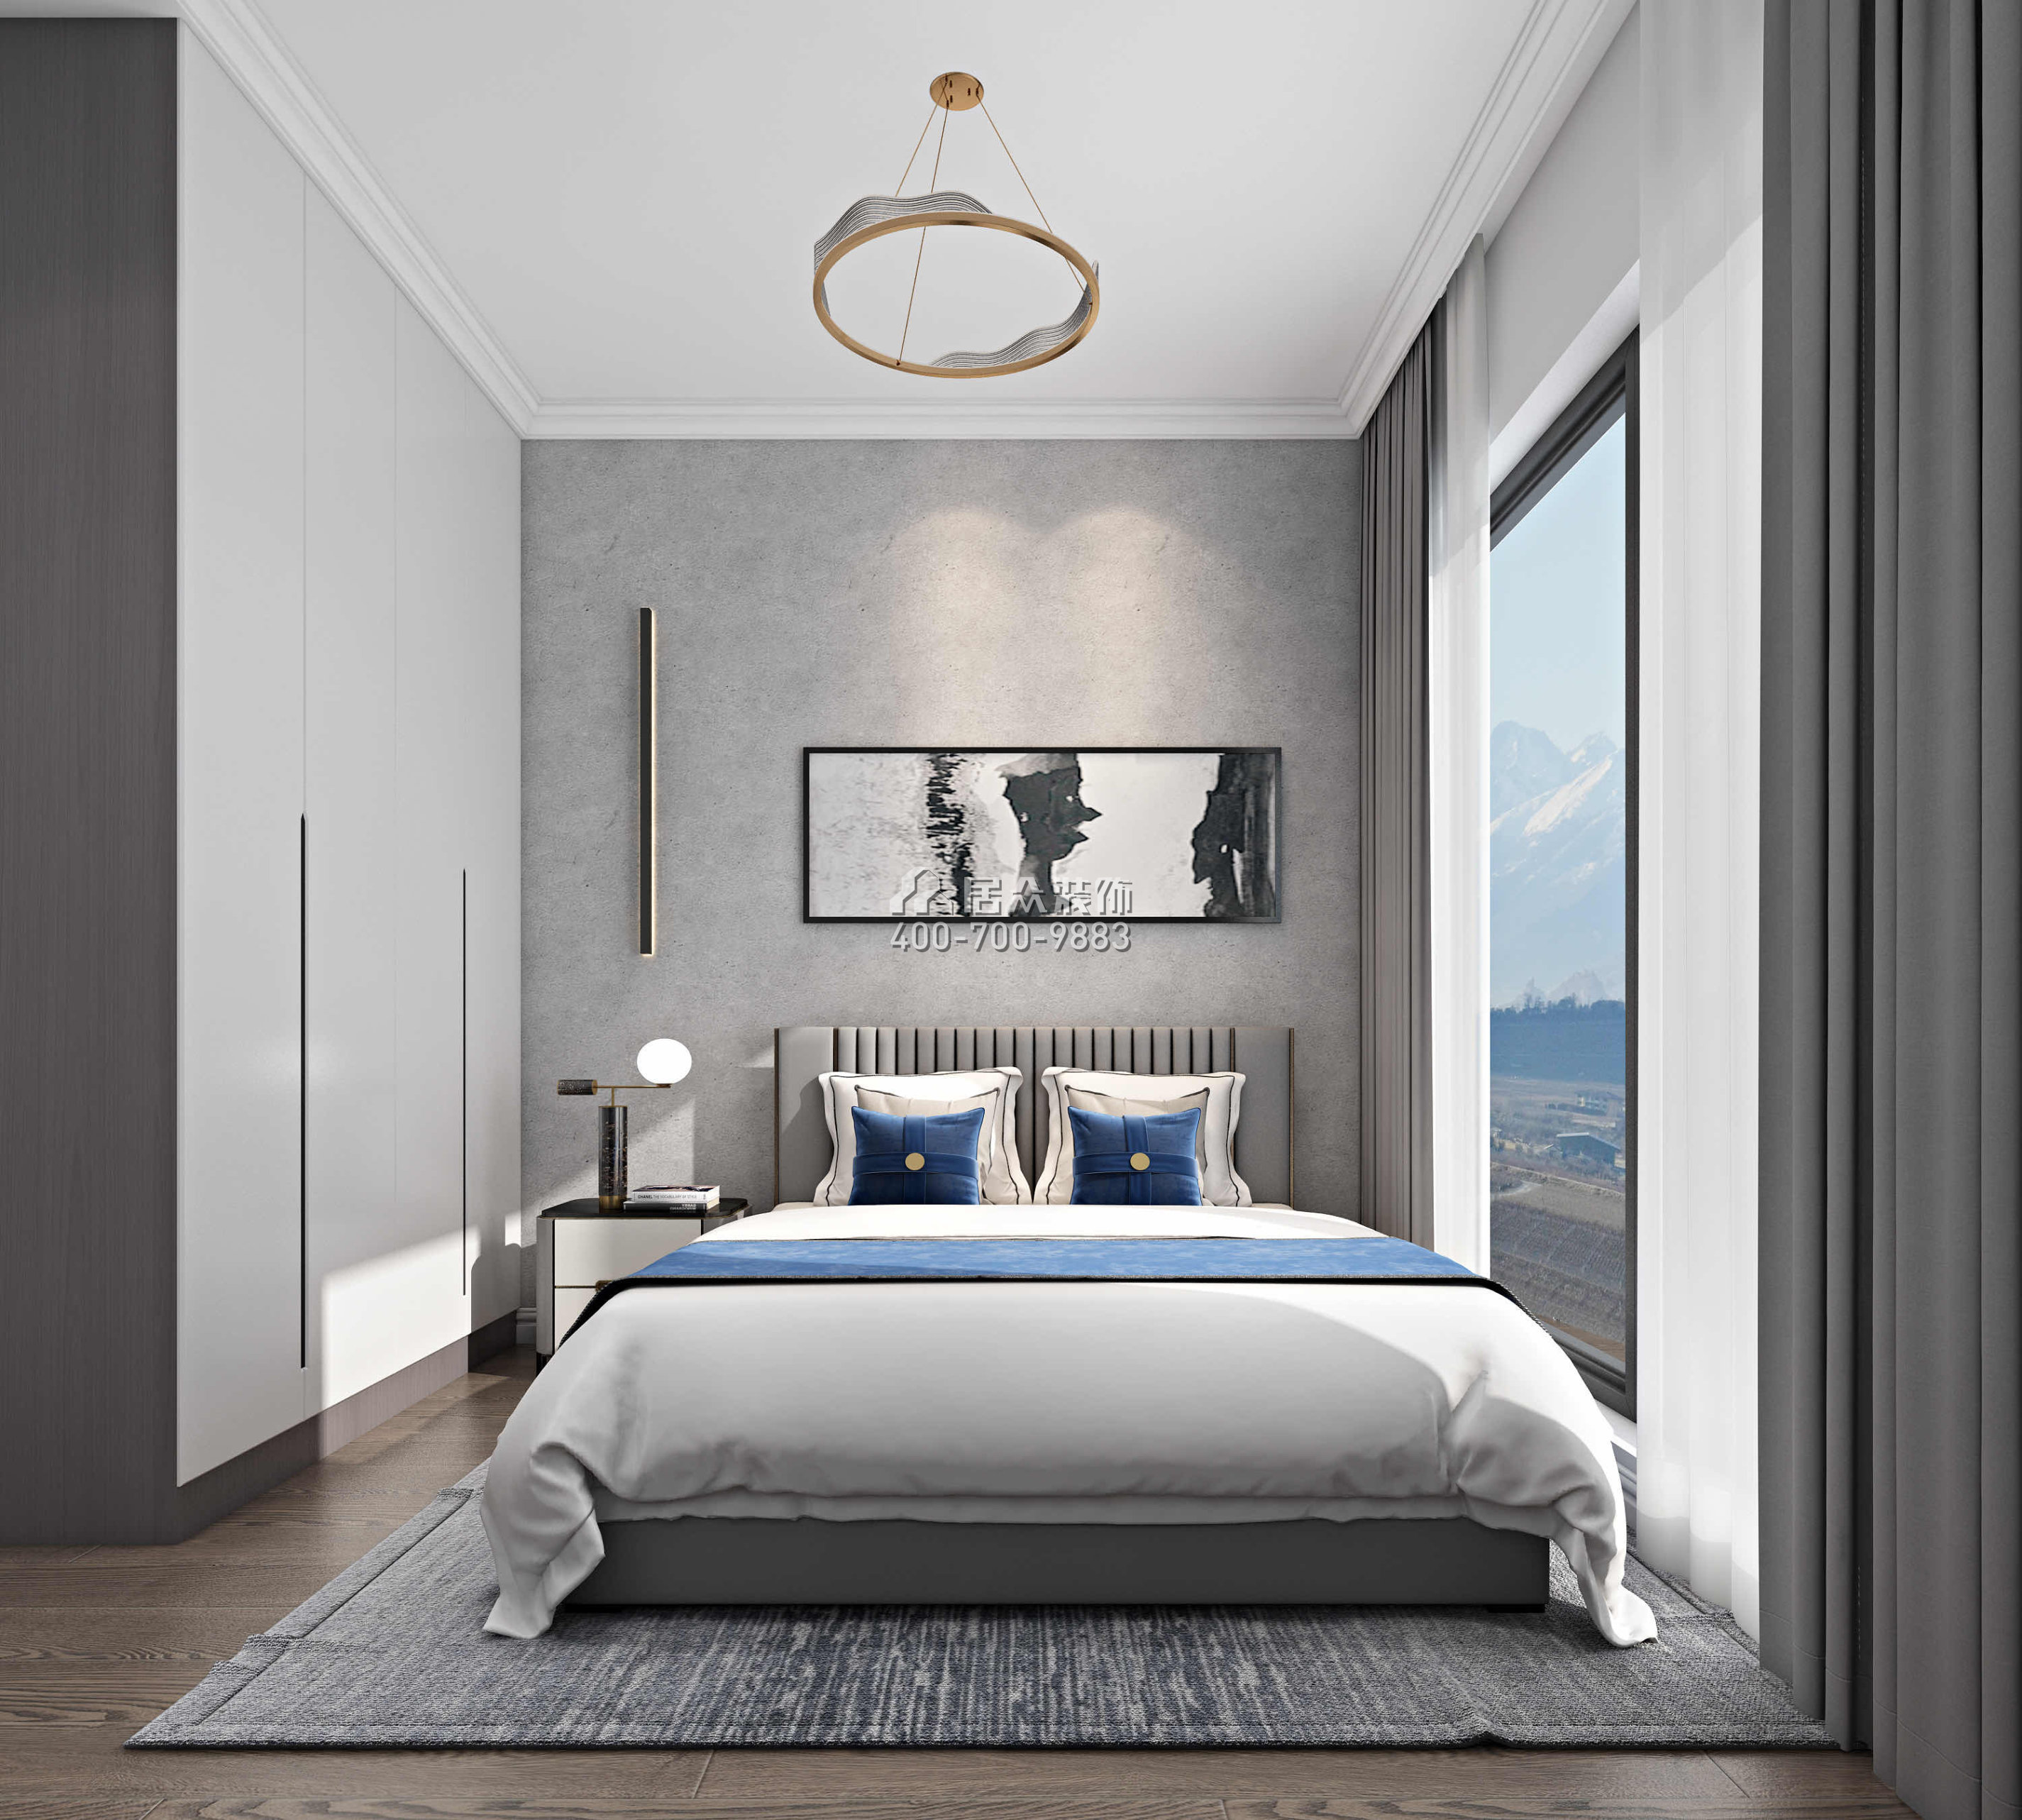 新天鵝堡122平方米現代簡約風格平層戶型臥室裝修效果圖